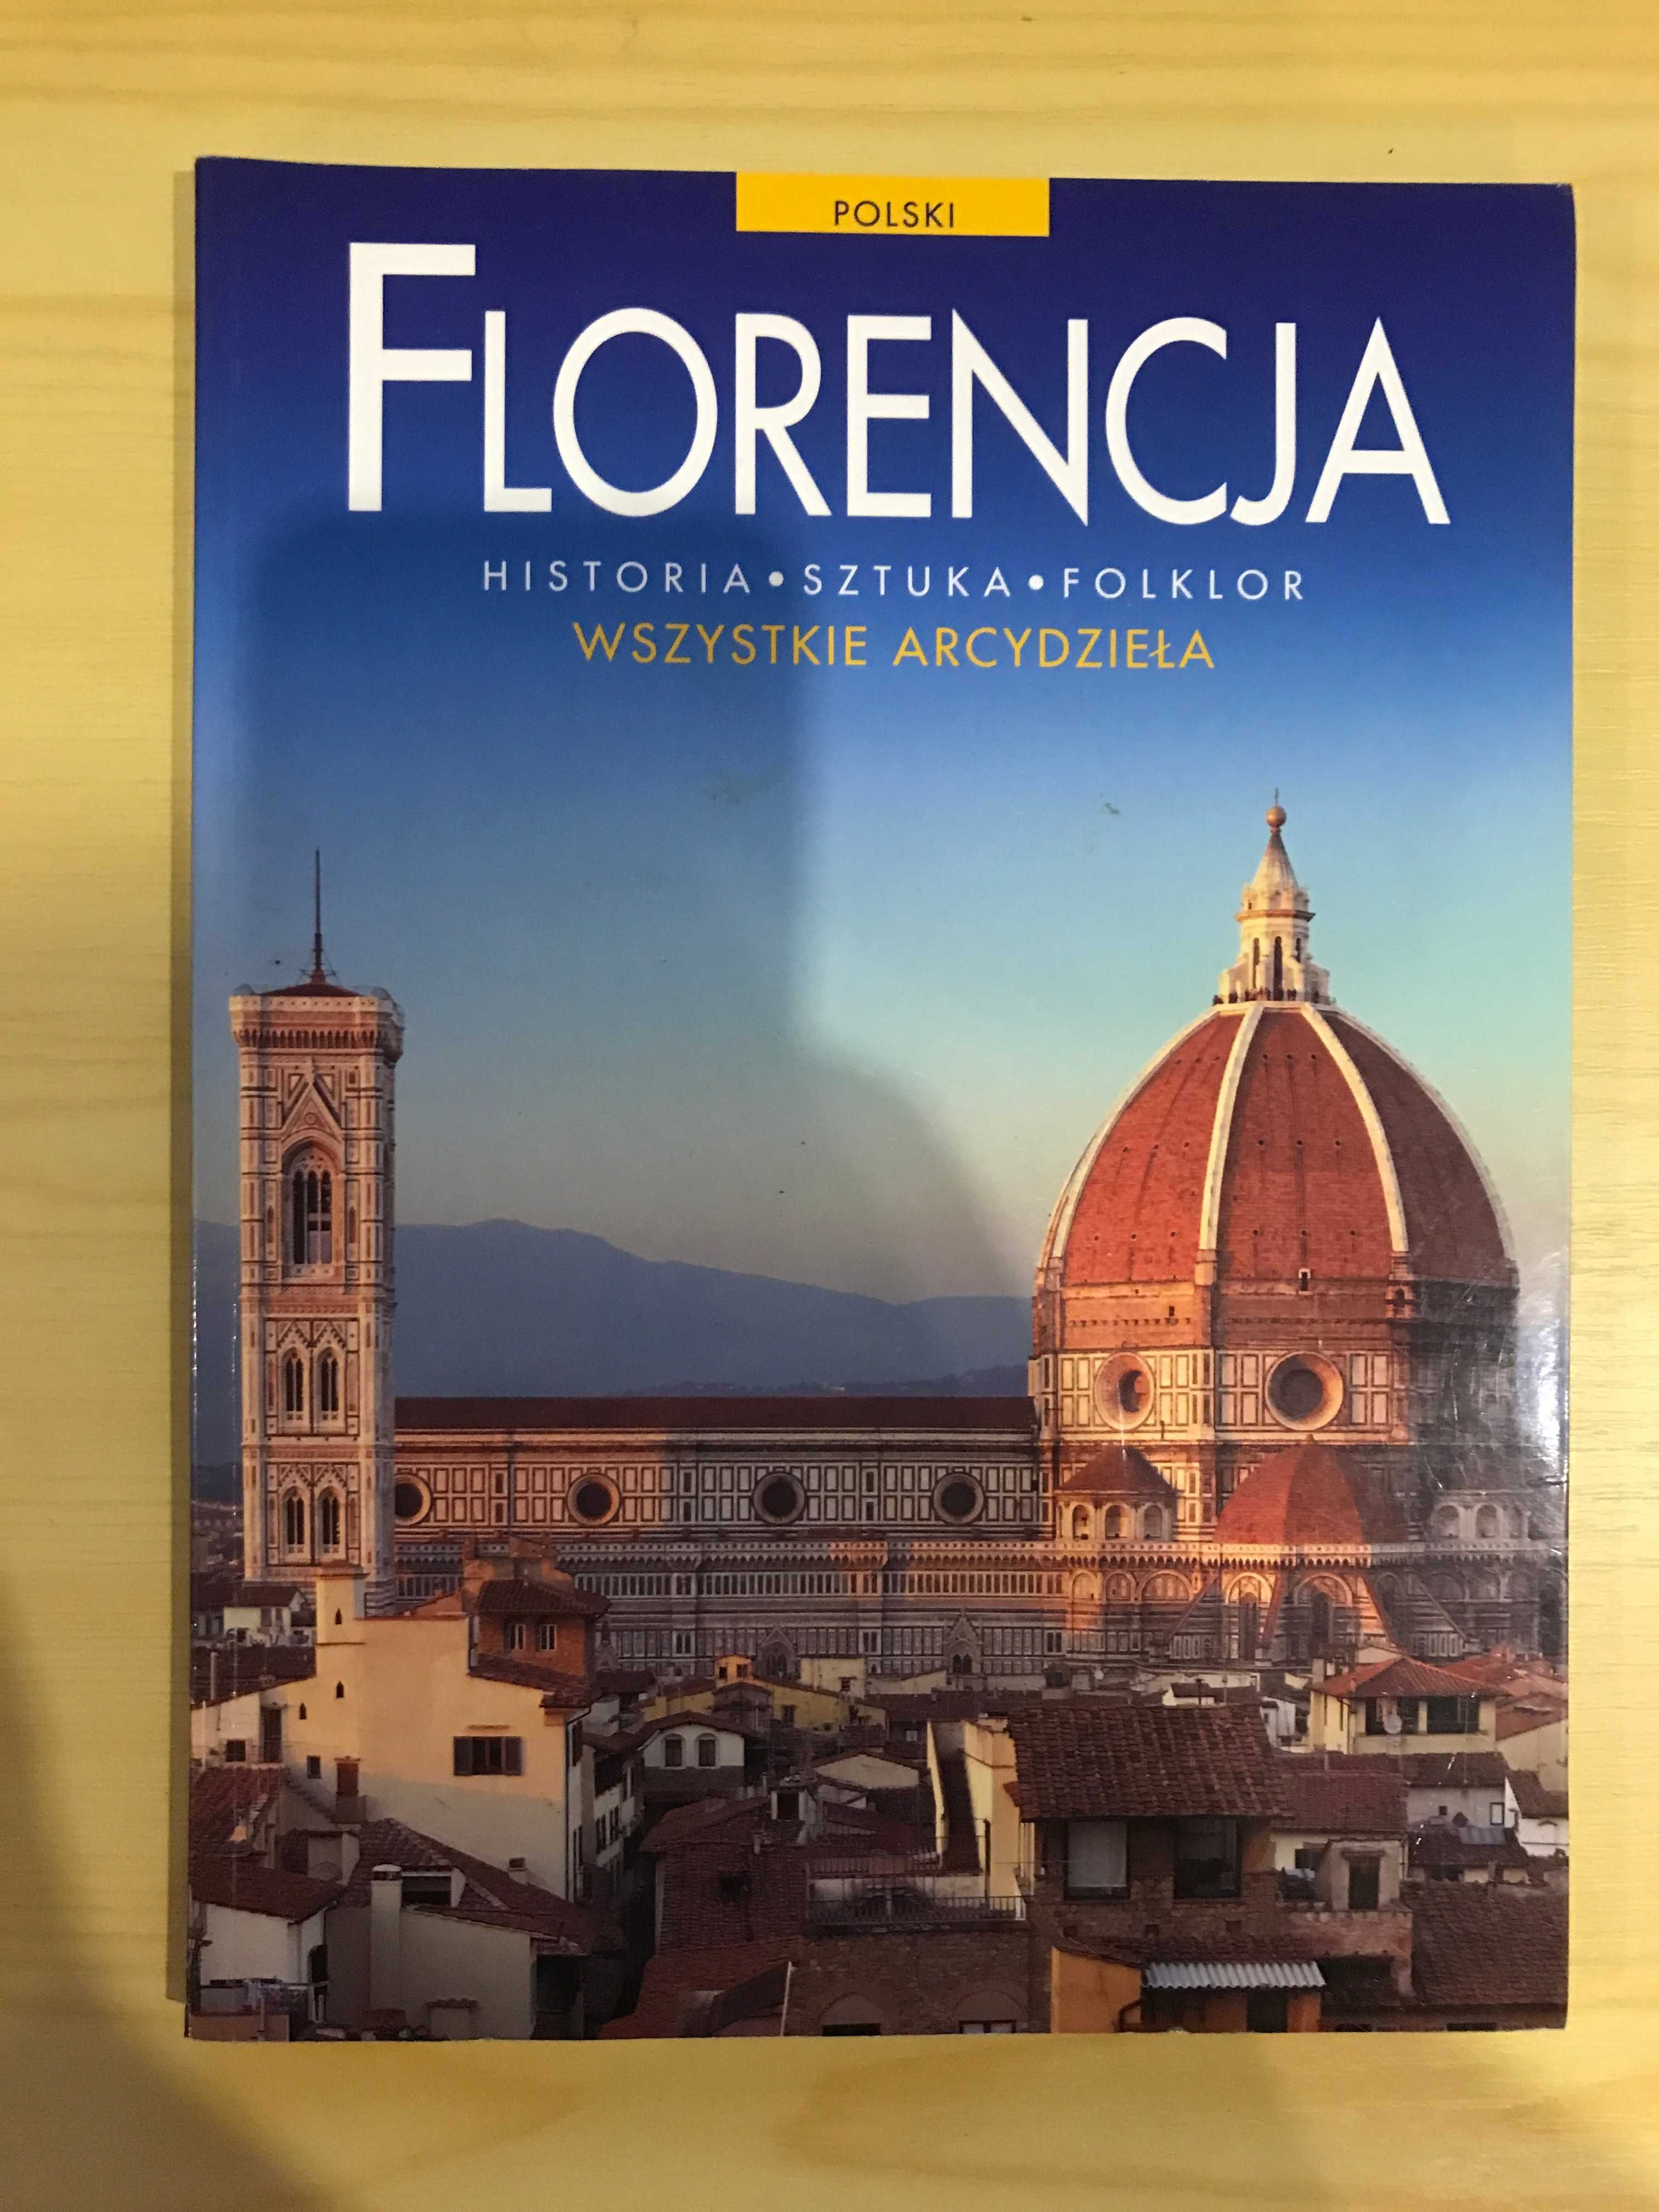 Florencja wszystkie arcydzieła historia sztuka folklor